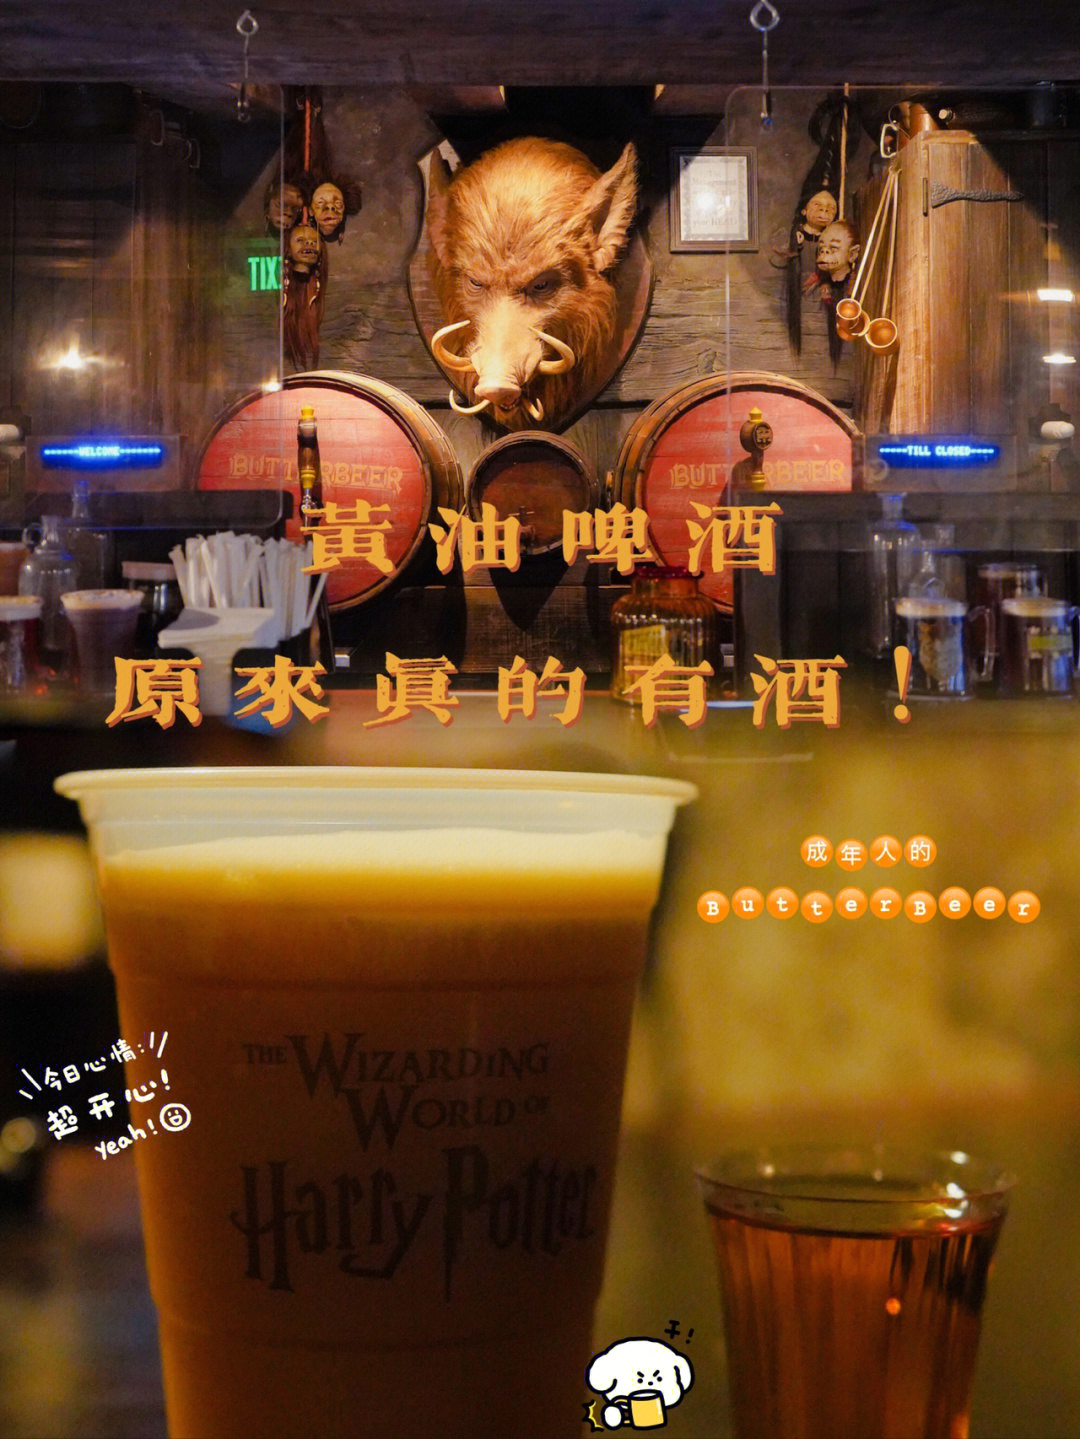 哈利波特黄油啤酒台词图片